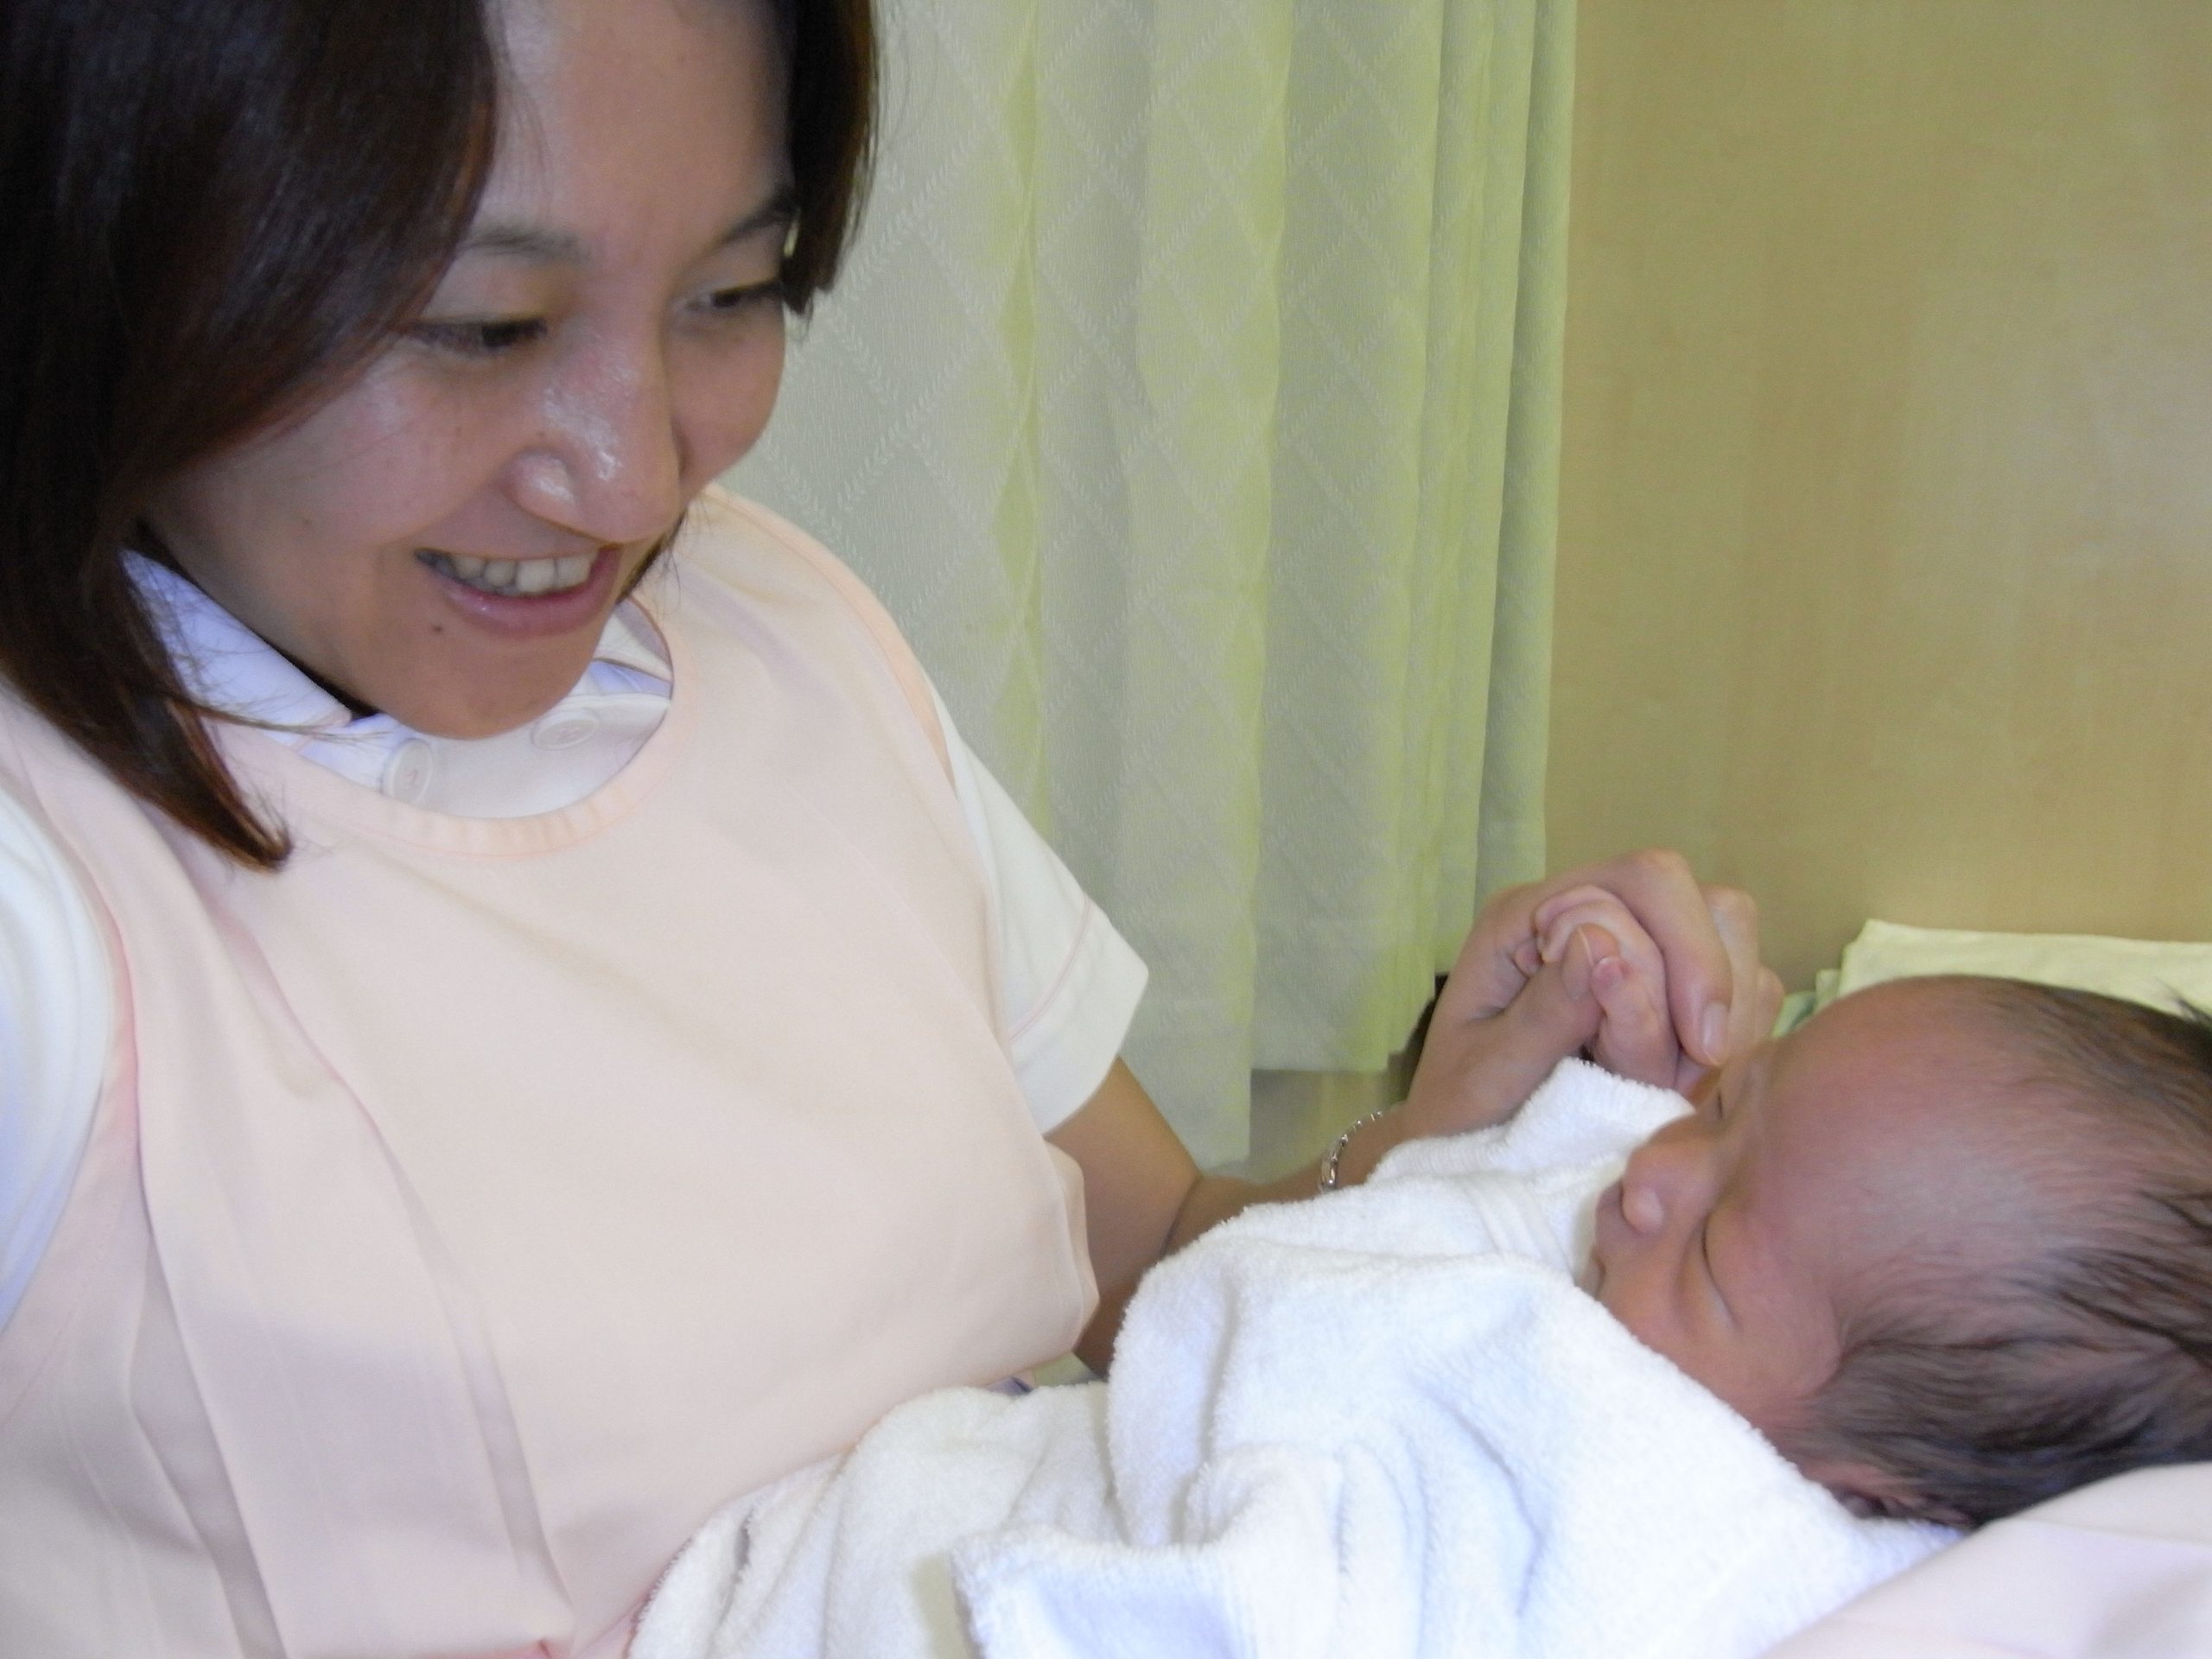 Noriko Aoyama delivers baby